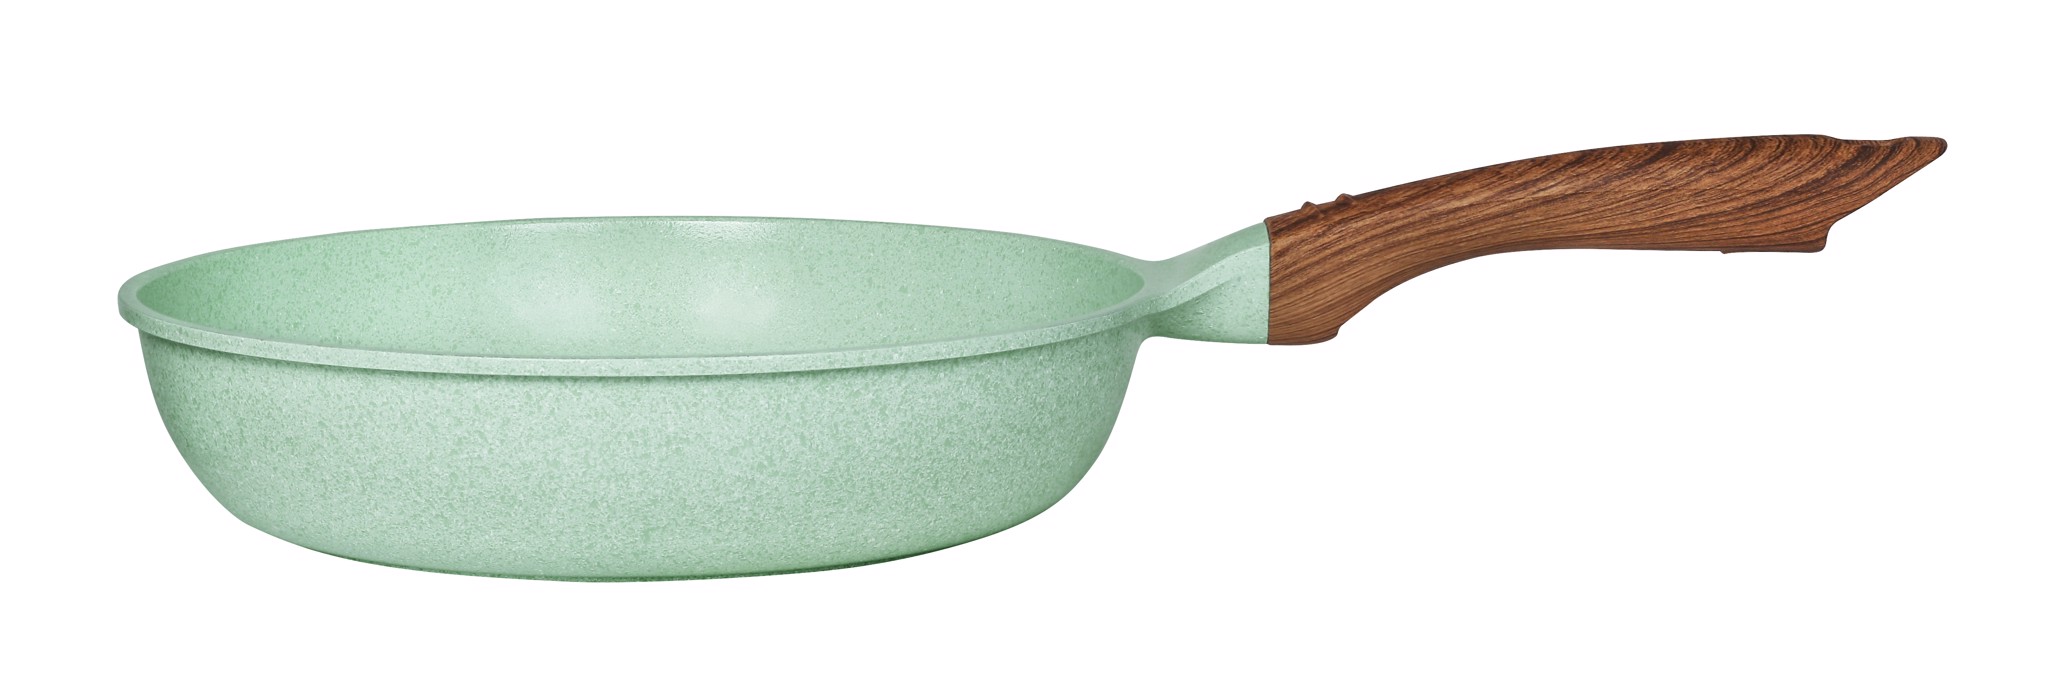 Chảo đúc chống dính 24cm sâu 6.2cm đáy từ 7 lớp men đá xanh ngọc sâu lòng Green Cook GCP06-24IH dùng cho mọi loại bếp